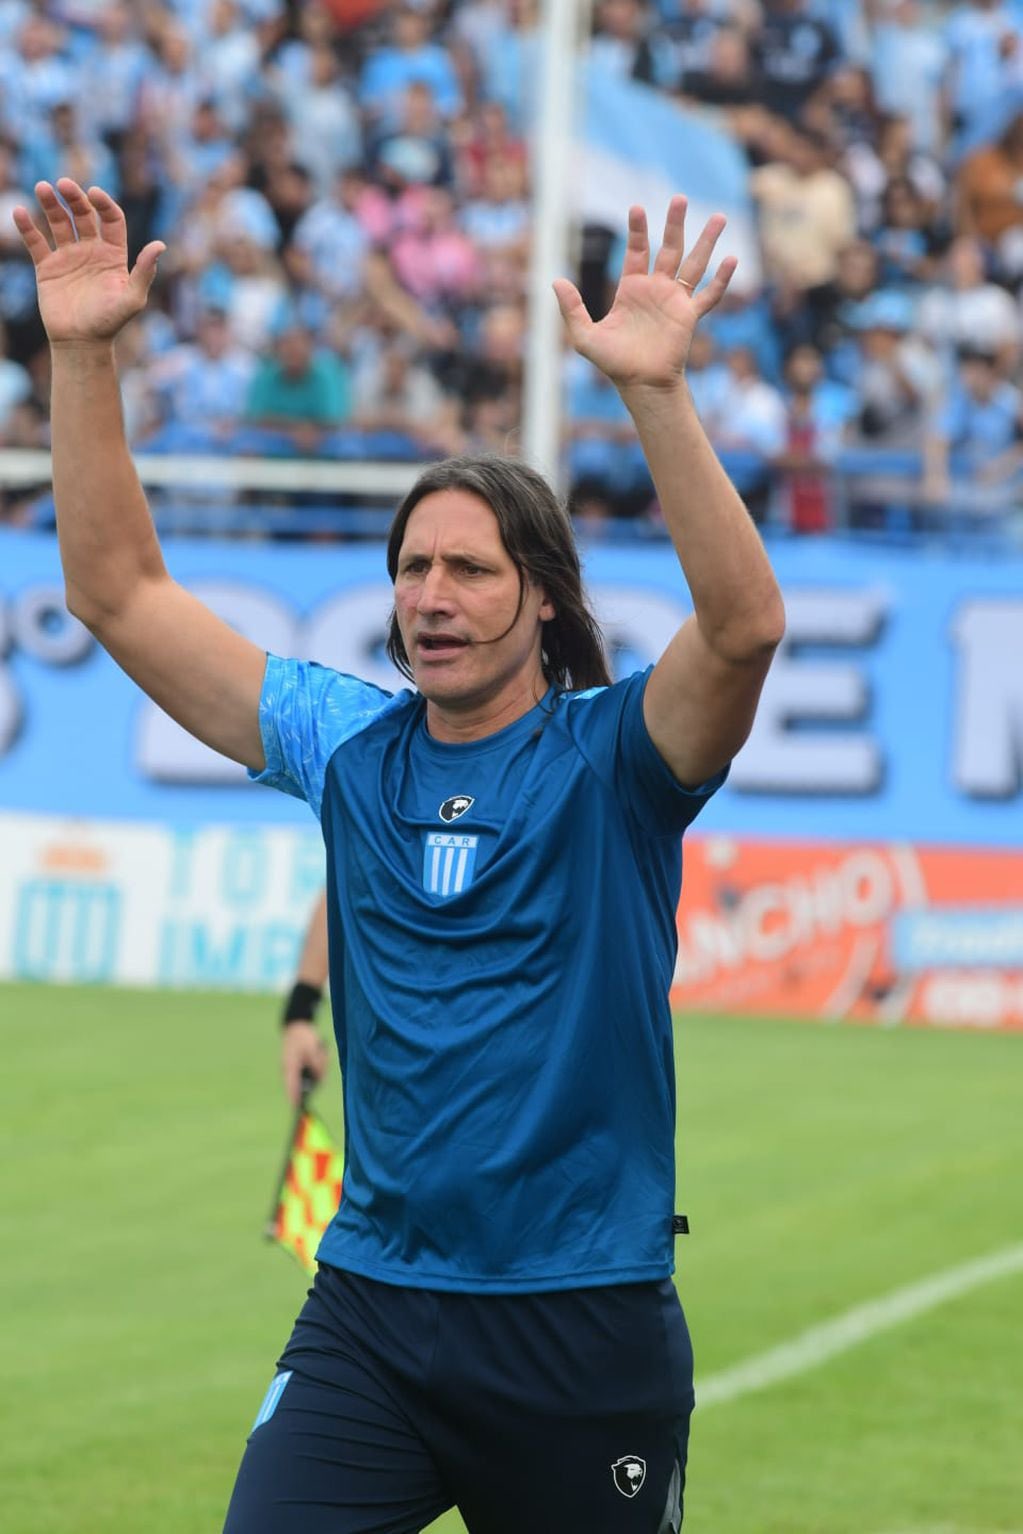 Olave: "Ni lo pensé de dirigir a Belgrano, ya estaba trabajando" | Canal Showsport